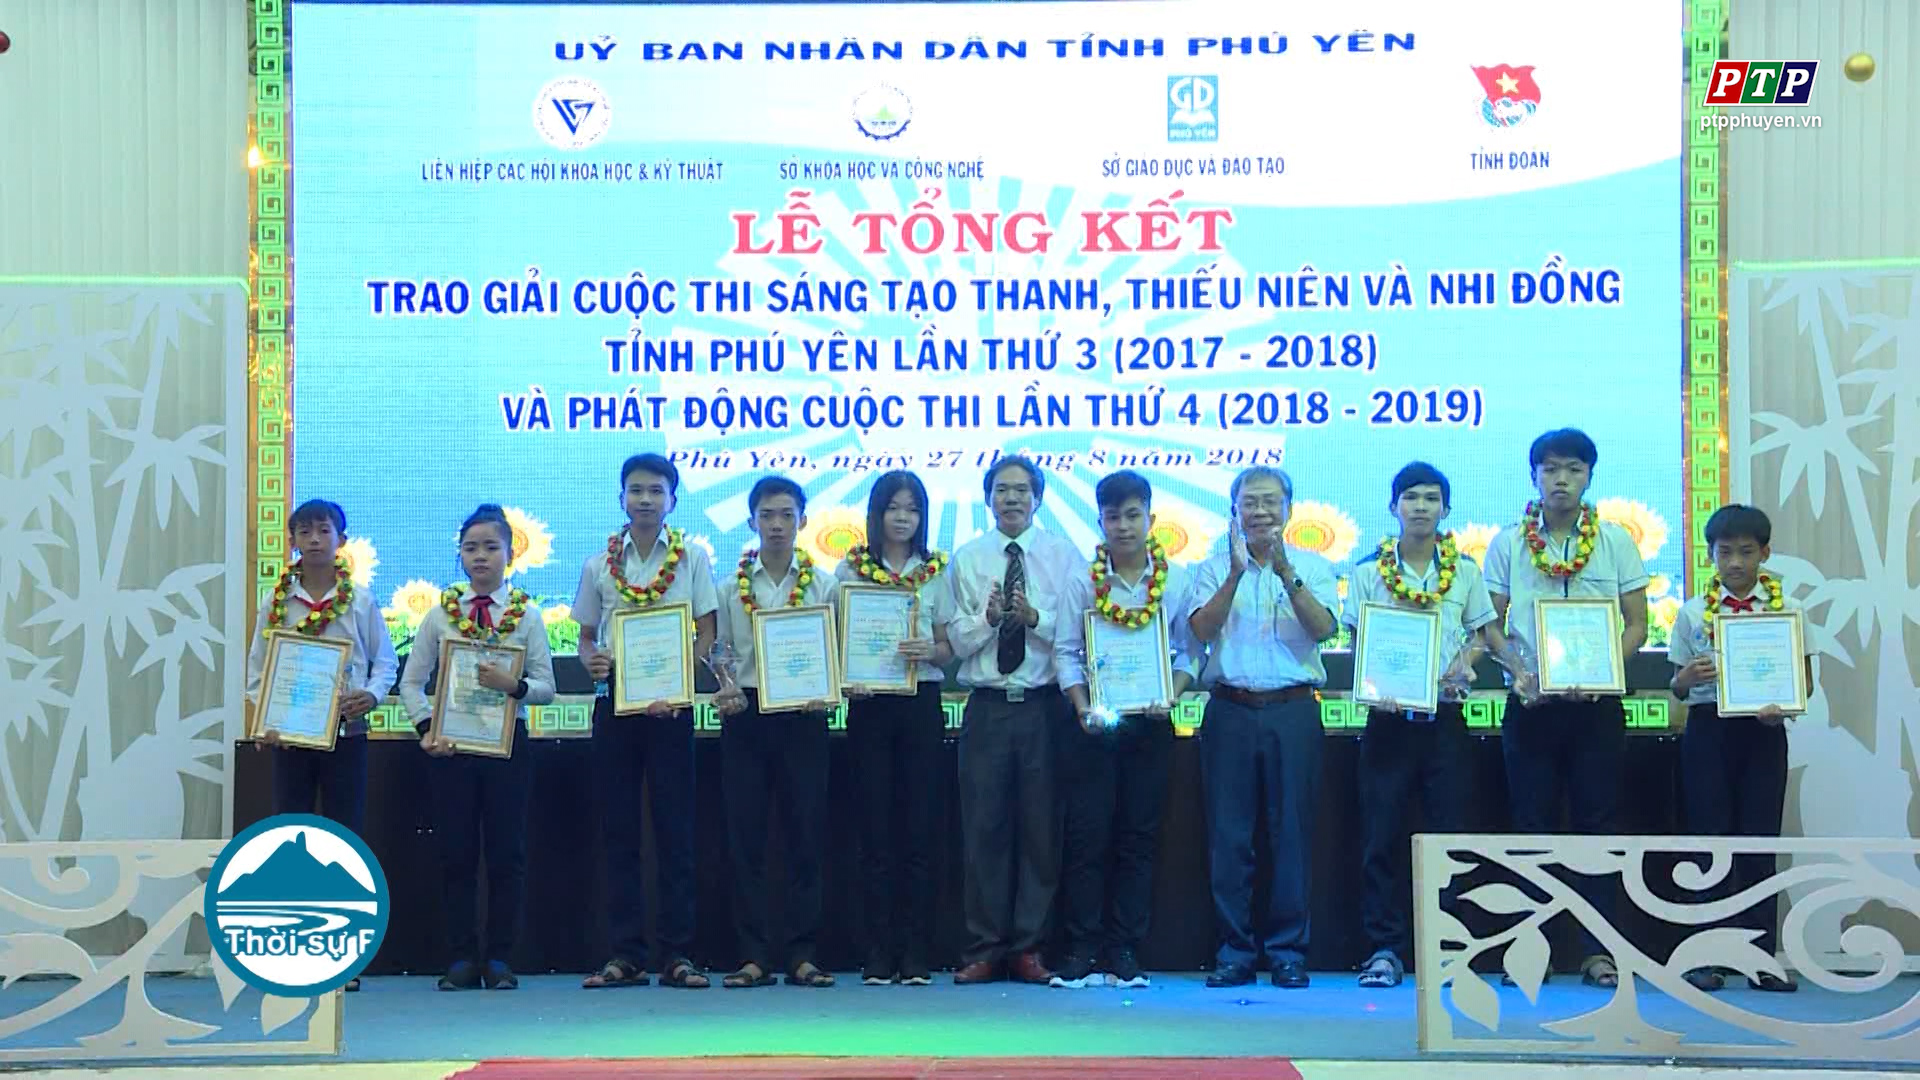 33 giải pháp đạt giải Cuộc thi sáng tạo TTN và Nhi đồng tỉnh Phú Yên lần thứ 3 (2017-2018)